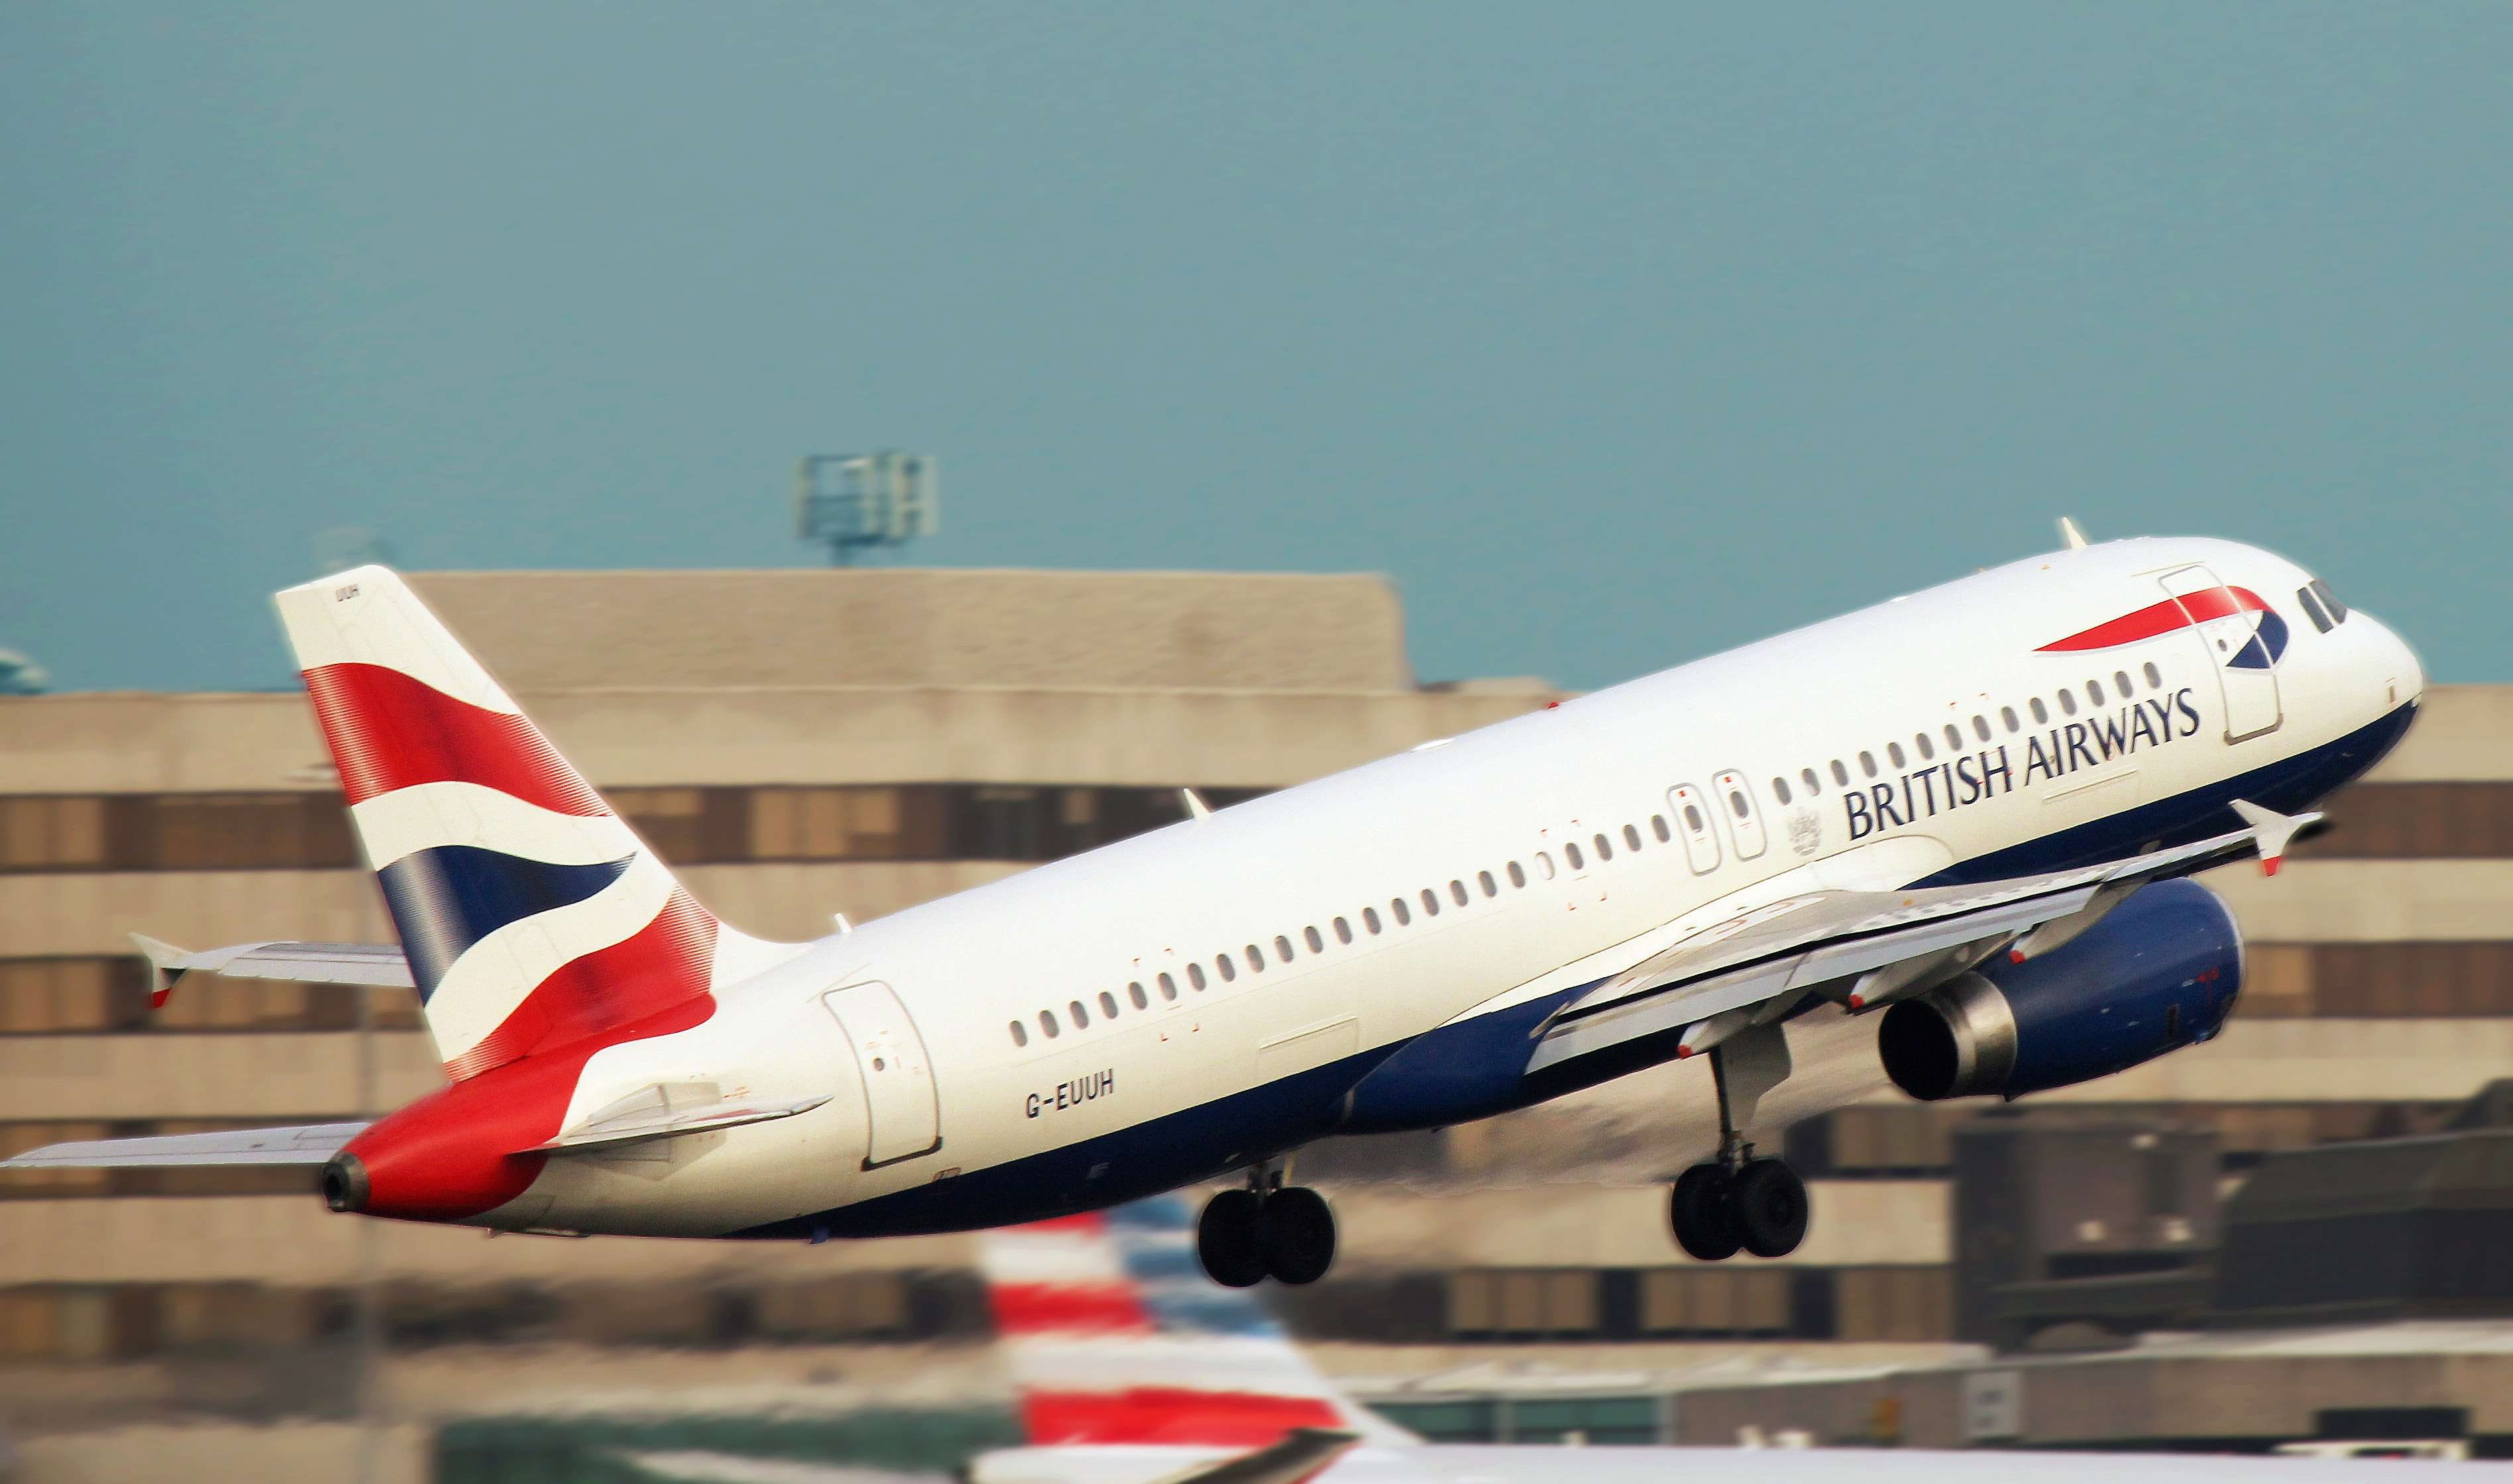 aeroplane, airbus, aircraft, airplane, airport, aviation, british airways